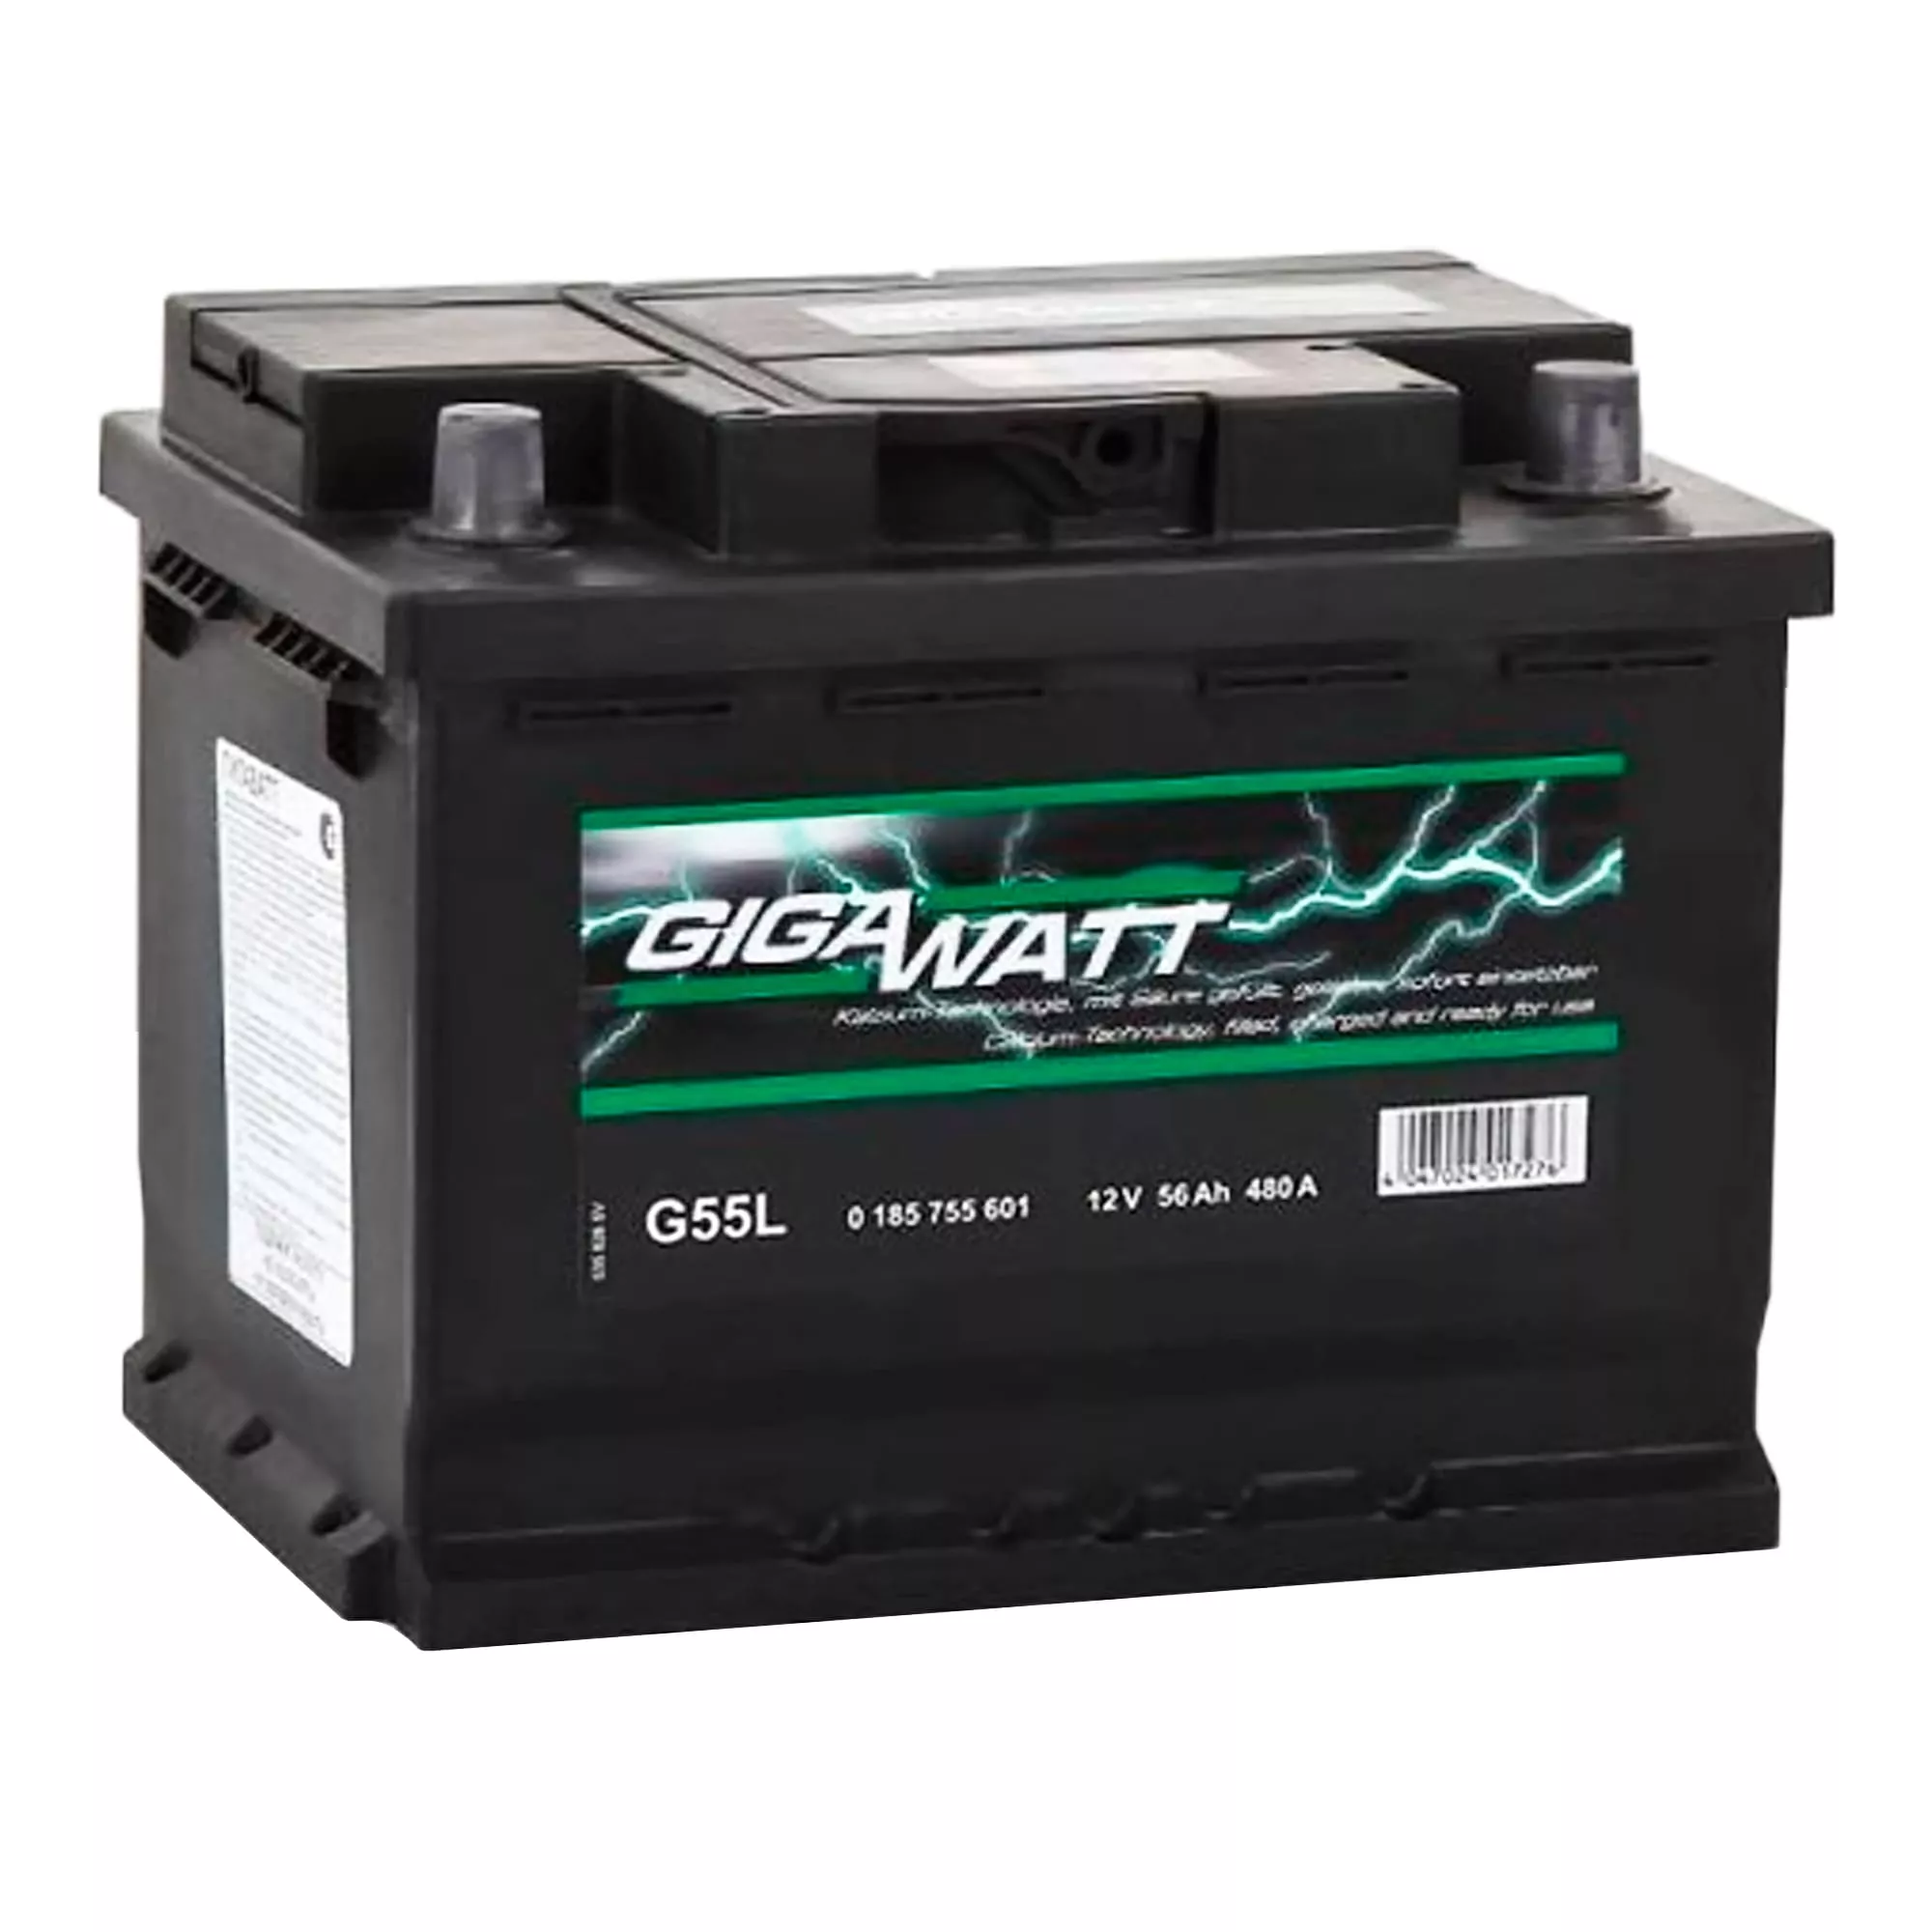 Автомобильный аккумулятор GIGAWATT 6СТ-56 480А Аз (0185755601)